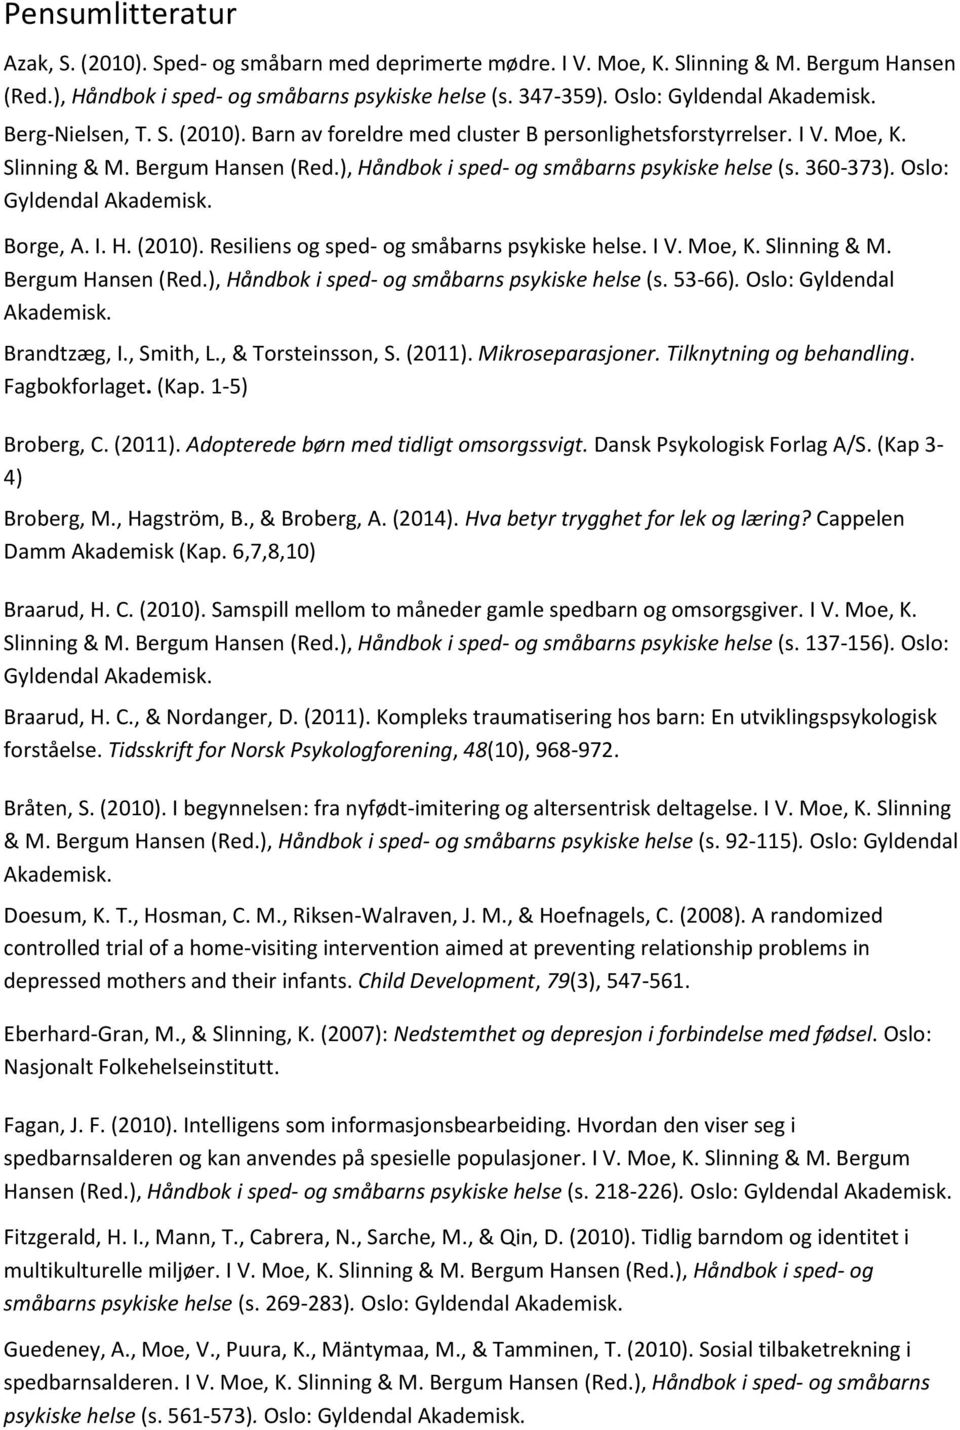 Oslo: Borge, A. I. H. (2010). Resiliens og sped- og småbarns psykiske helse. I V. Moe, K. Slinning & M. Bergum Hansen (Red.), Håndbok i sped- og småbarns psykiske helse (s. 53-66).